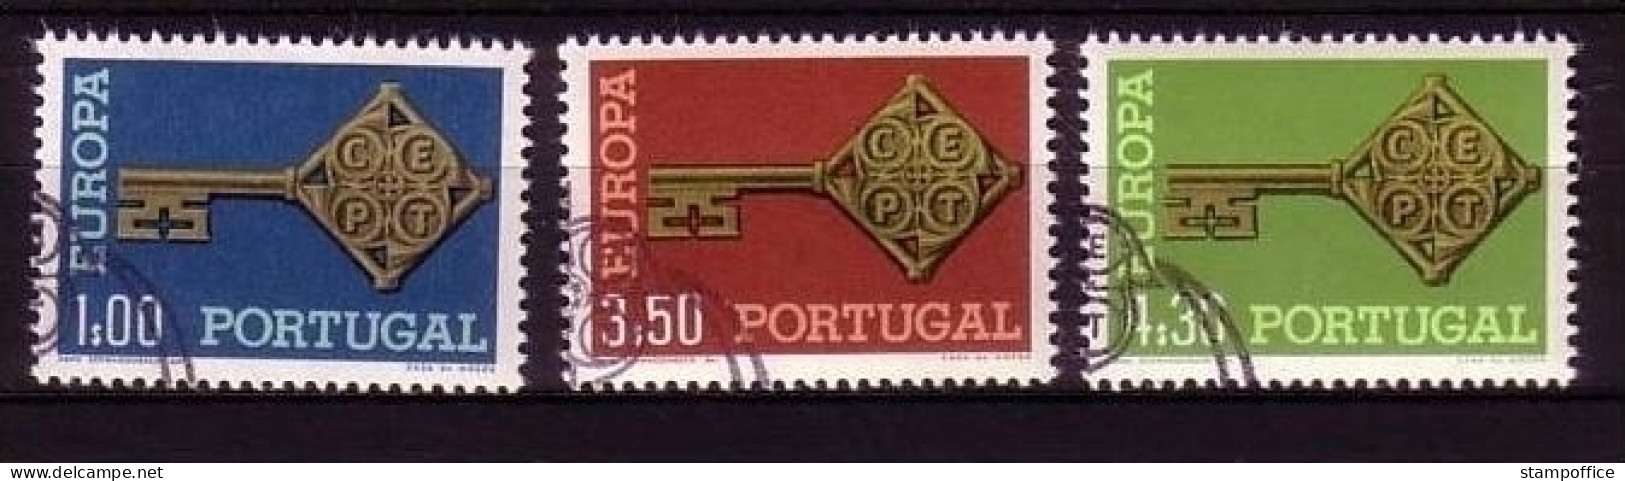 PORTUGAL MI-NR. 1051-1053 O EUROPA 1968 - KREUZBARTSCHLÜSSEL - 1968